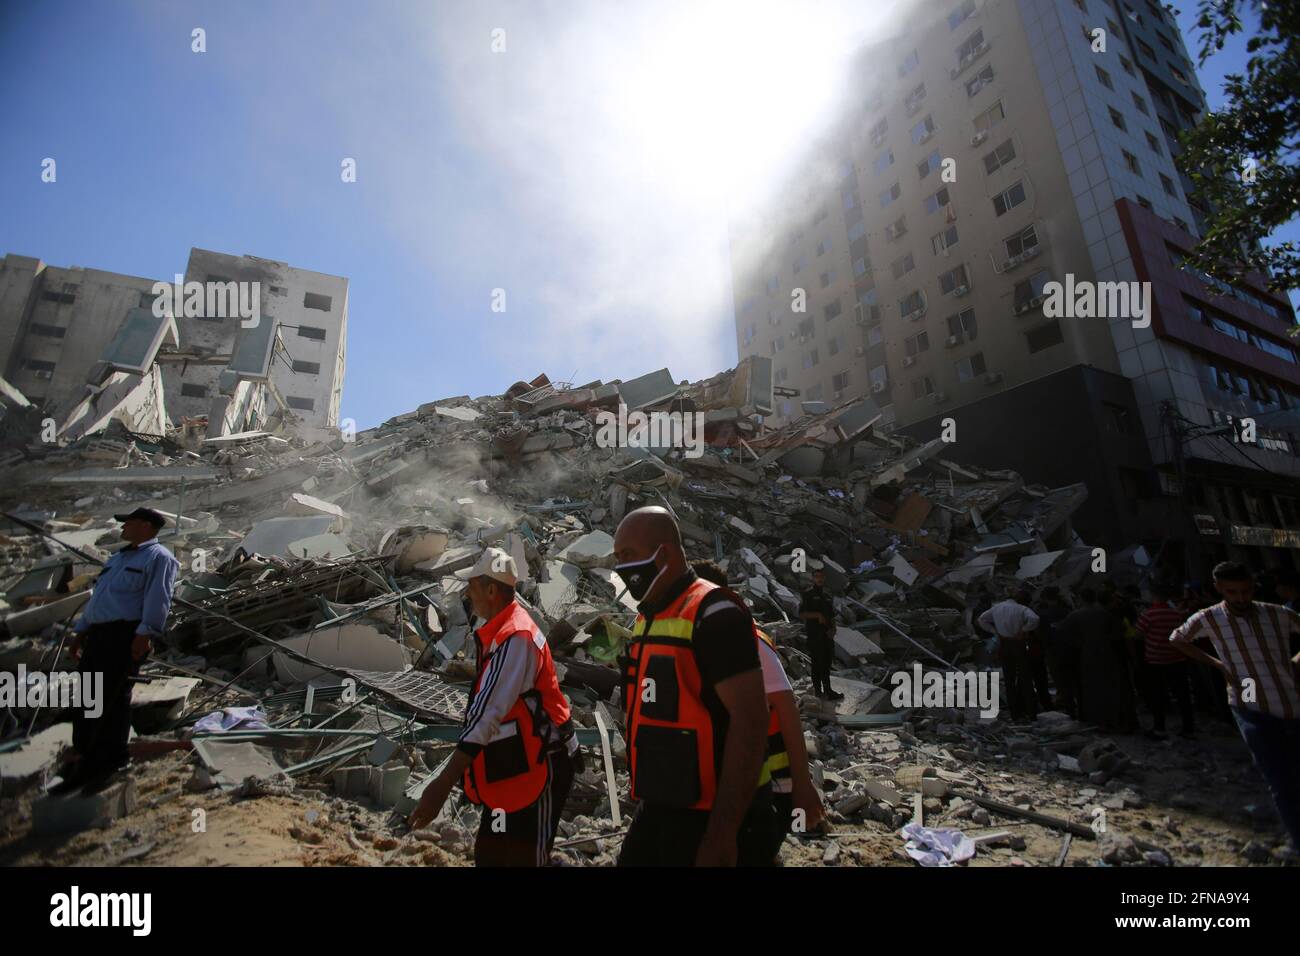 Gaza, Gaza. Mai 2021. Die Feuerwehrleute gehen nach einem israelischen Luftangriff im Gazastreifen am 15. Mai 2021 zu den Trümmern des Jala-Turms, in dem internationale Pressebüros untergebracht waren. - ein israelischer Luftangriff zerstörte das 13-stöckige Gebäude, in dem das in Katar ansässige Al-Jazeera-Fernsehen und die amerikanische Nachrichtenagentur The Associated Press im Gazastreifen untergebracht sind. Foto von Ahmad Zaqut/UPI Credit: UPI/Alamy Live News Stockfoto